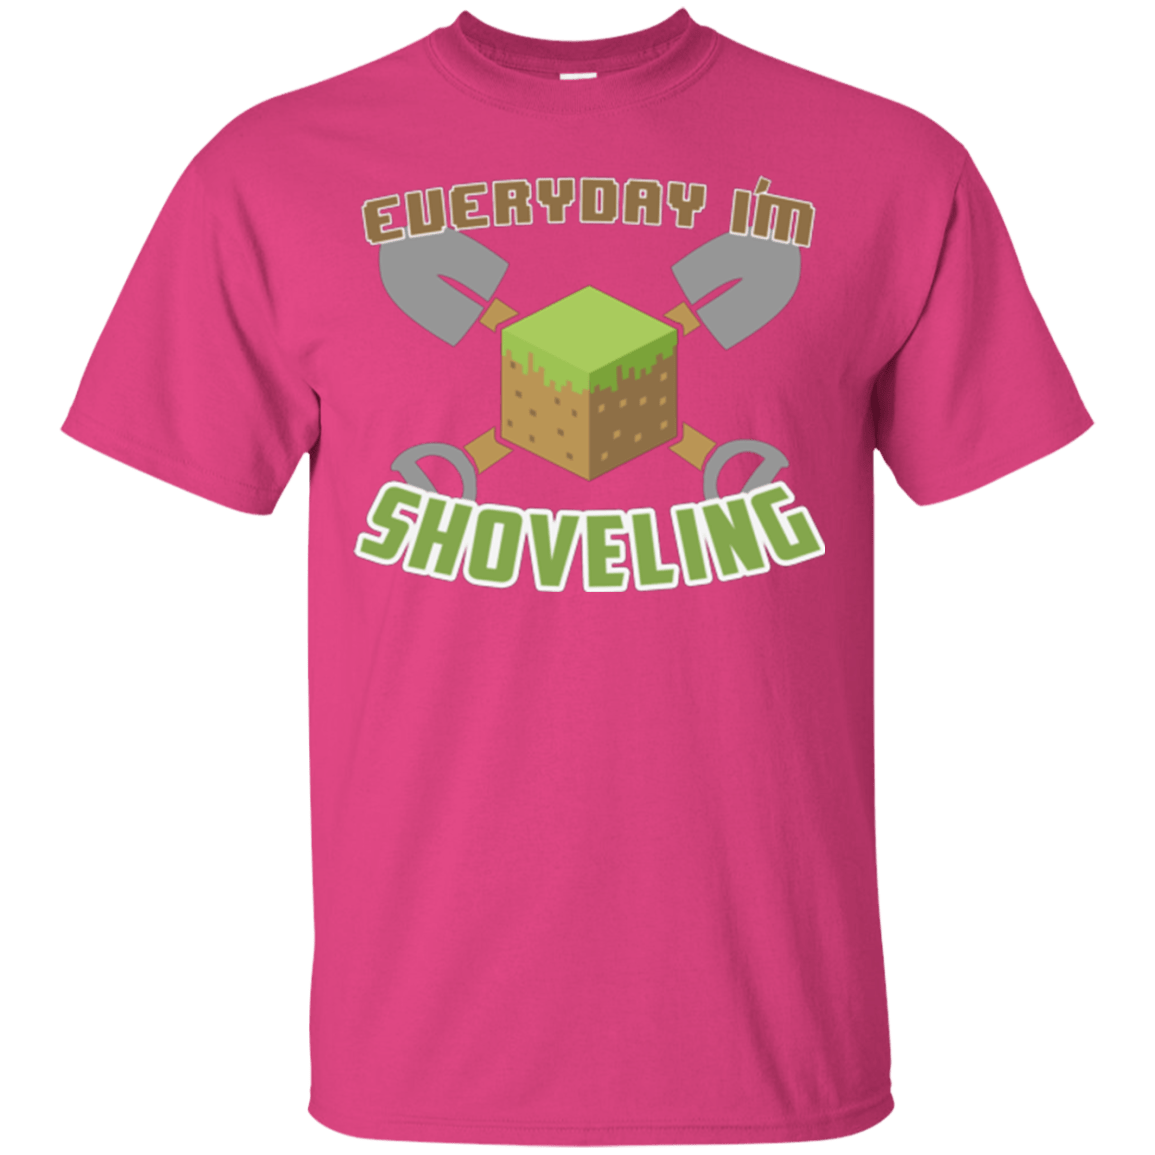 Everyday Shoveling T-Shirt